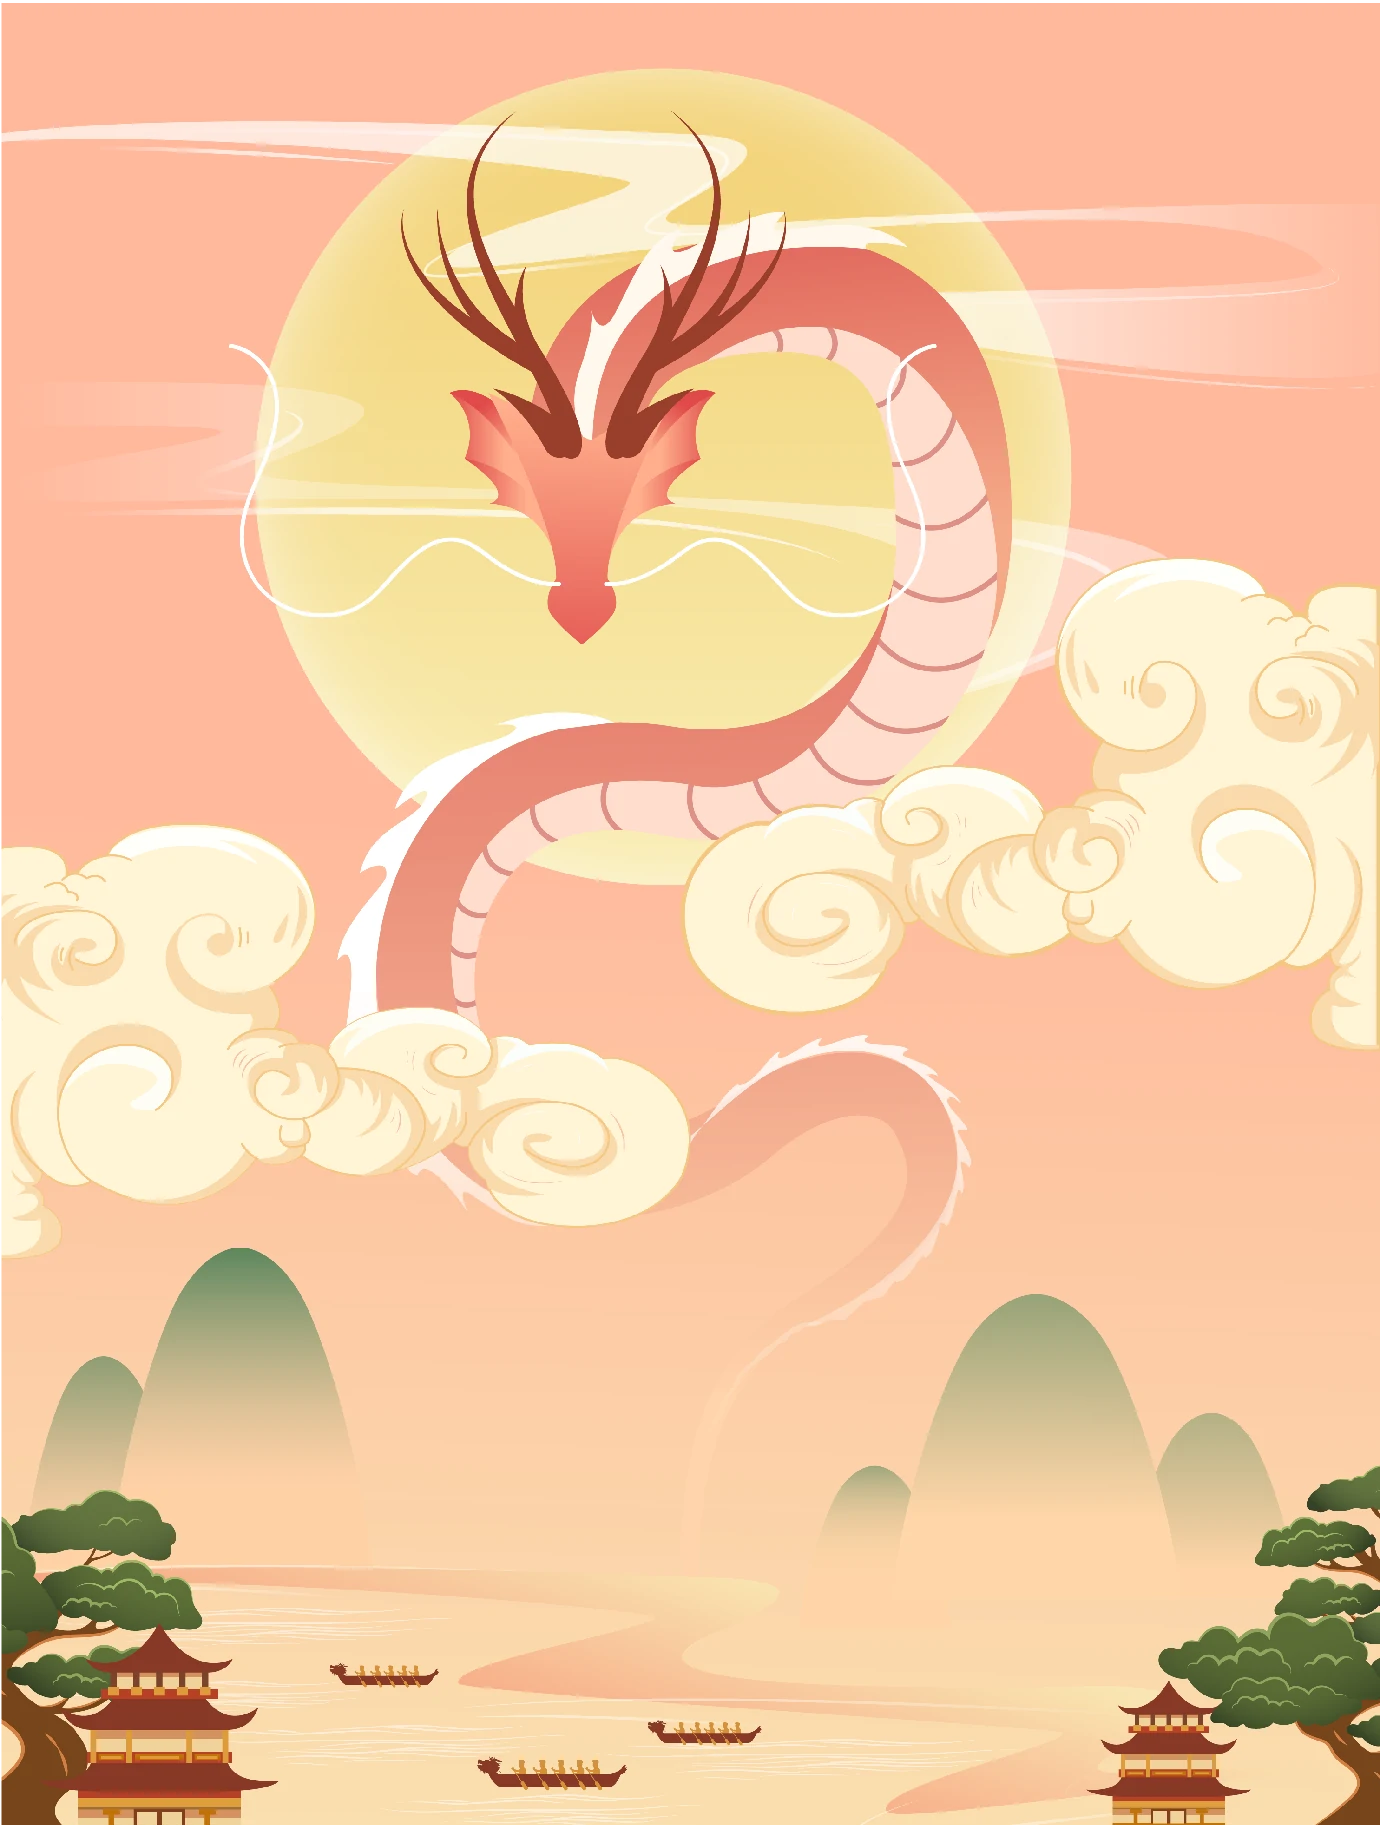 中国传统节日端午节端午安康赛龙舟包粽子插画海报AI矢量设计素材【002】